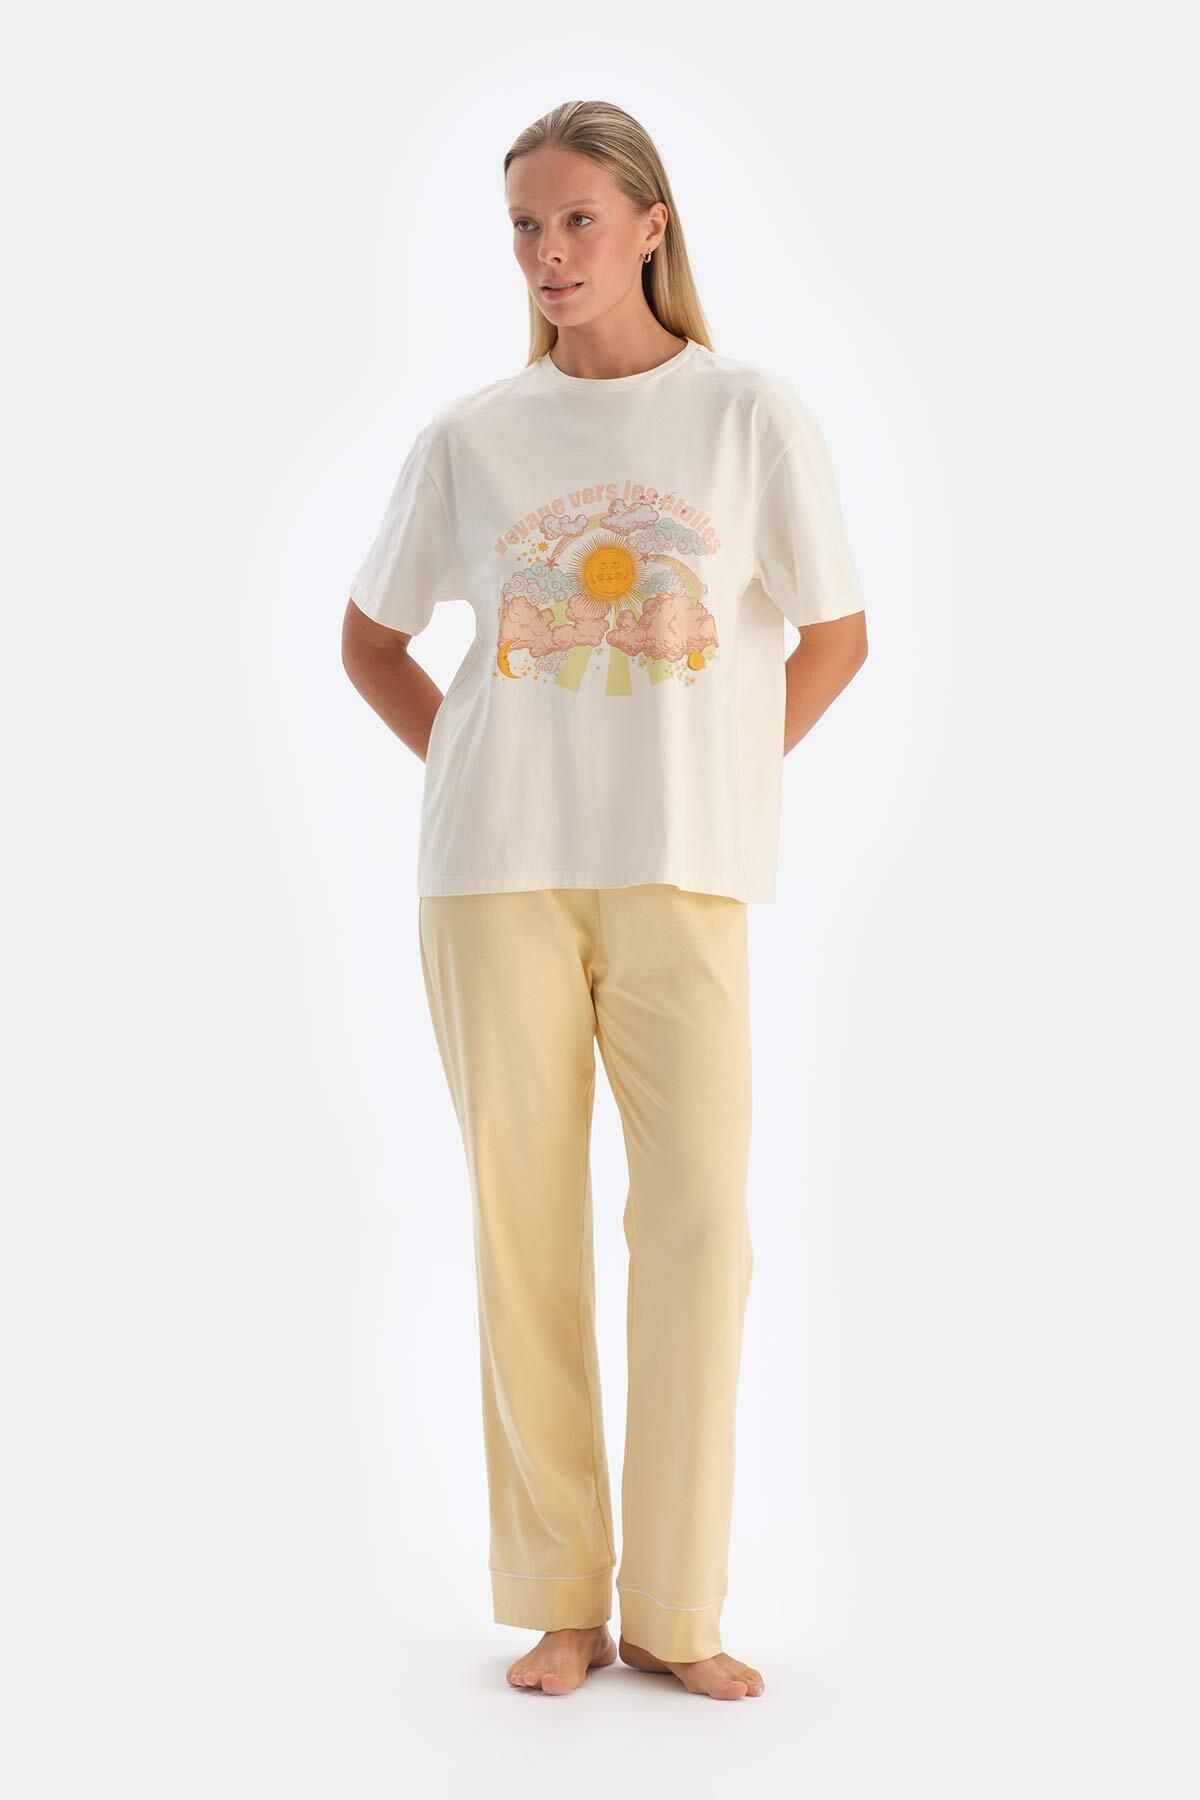 Dagi Kırık Beyaz Baskılı Tişört Pantolon Pijama Takımı